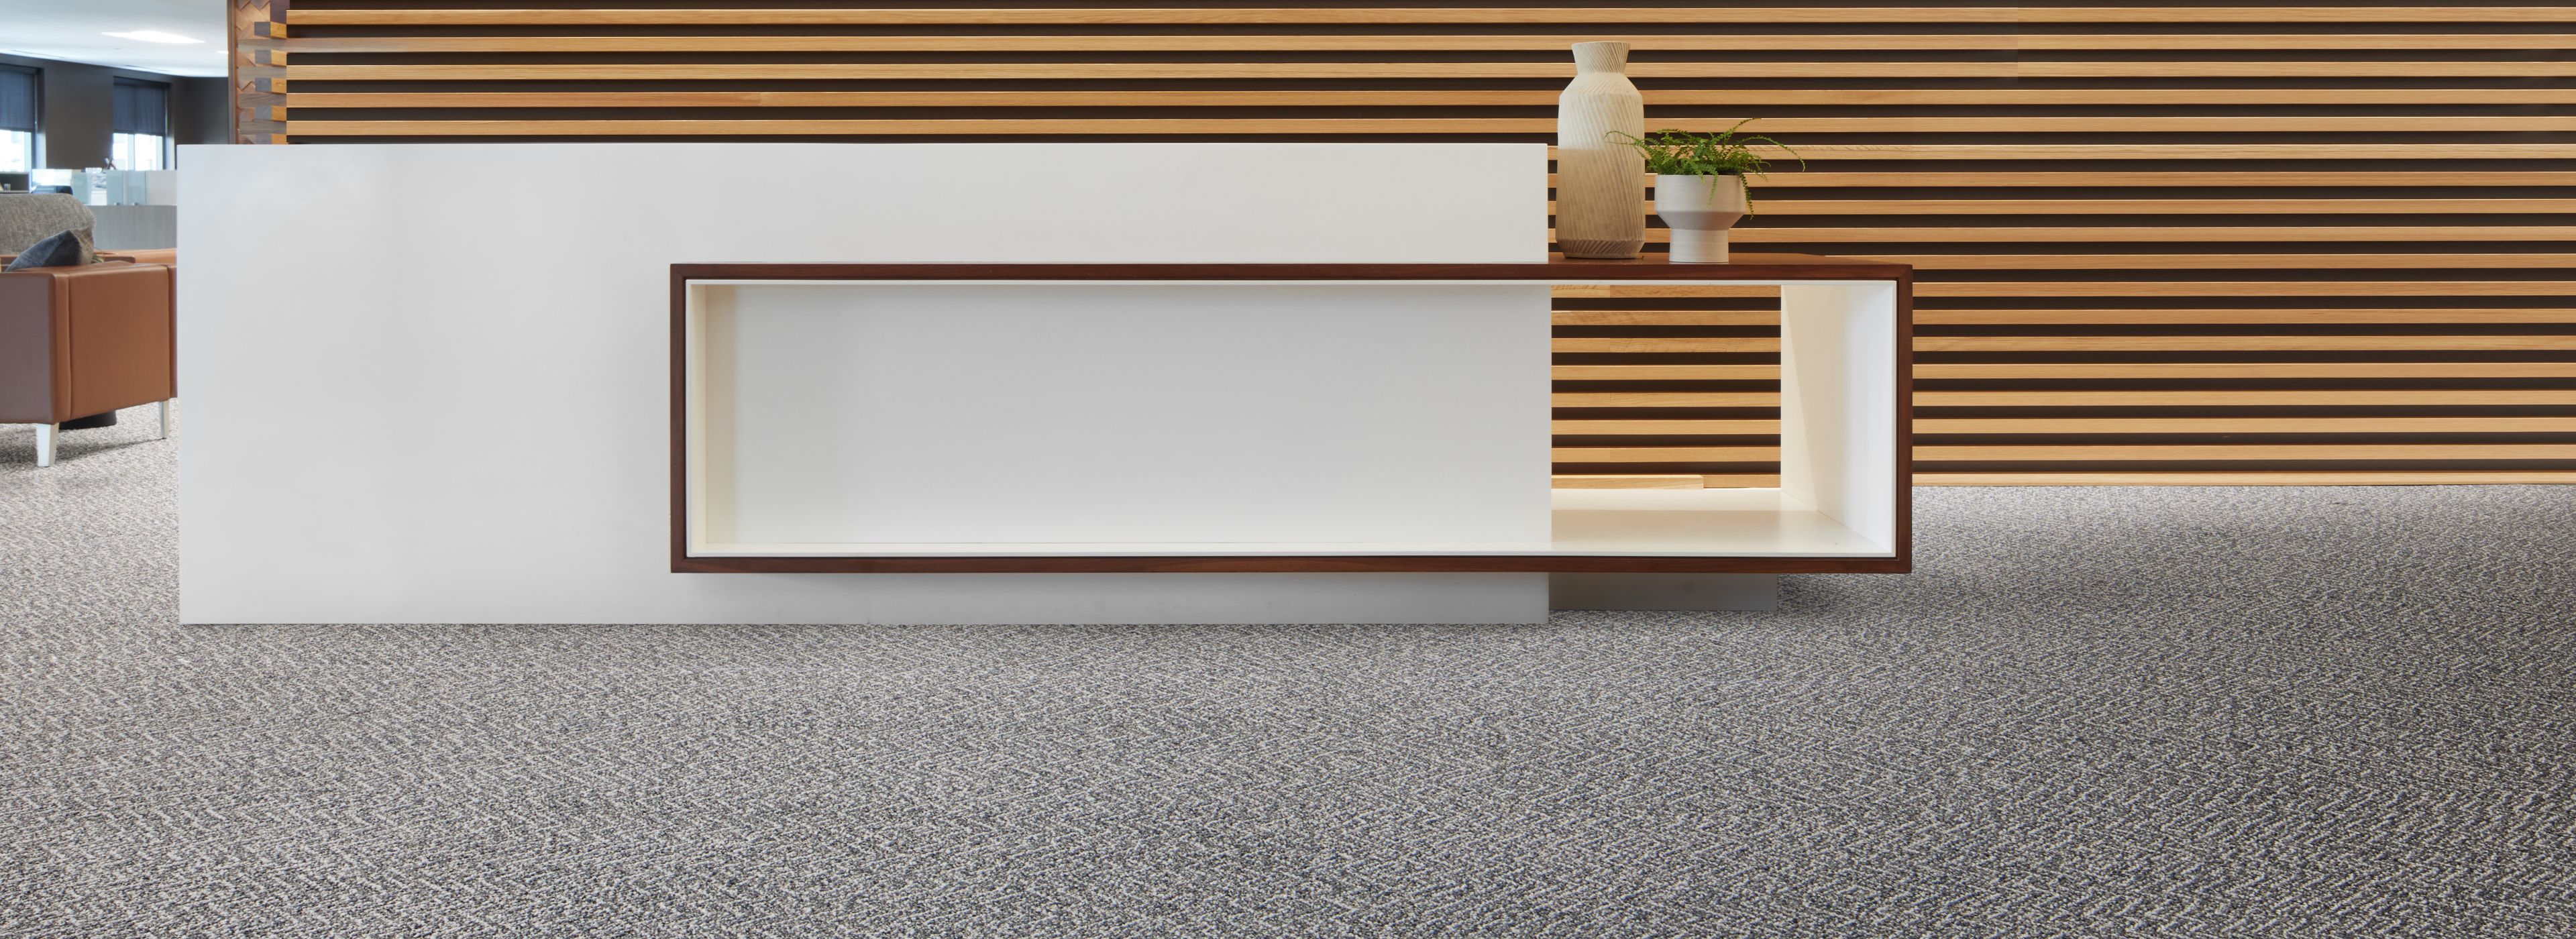 Interface Third Space 308 plank carpet tile in reception area numéro d’image 1